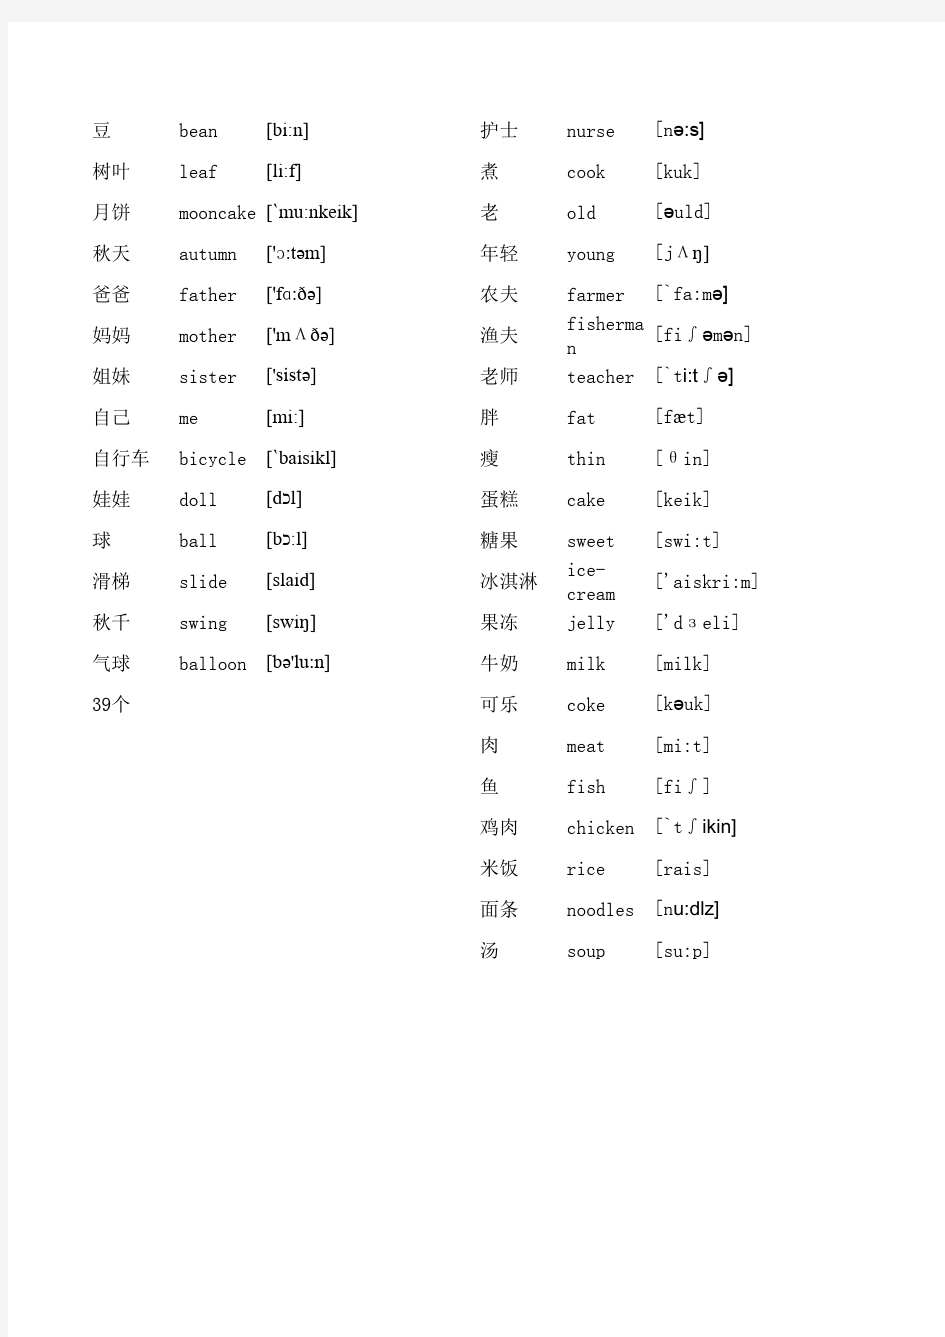 牛津小学英语上海版单词表一年级 [ 1A-2B]带音标